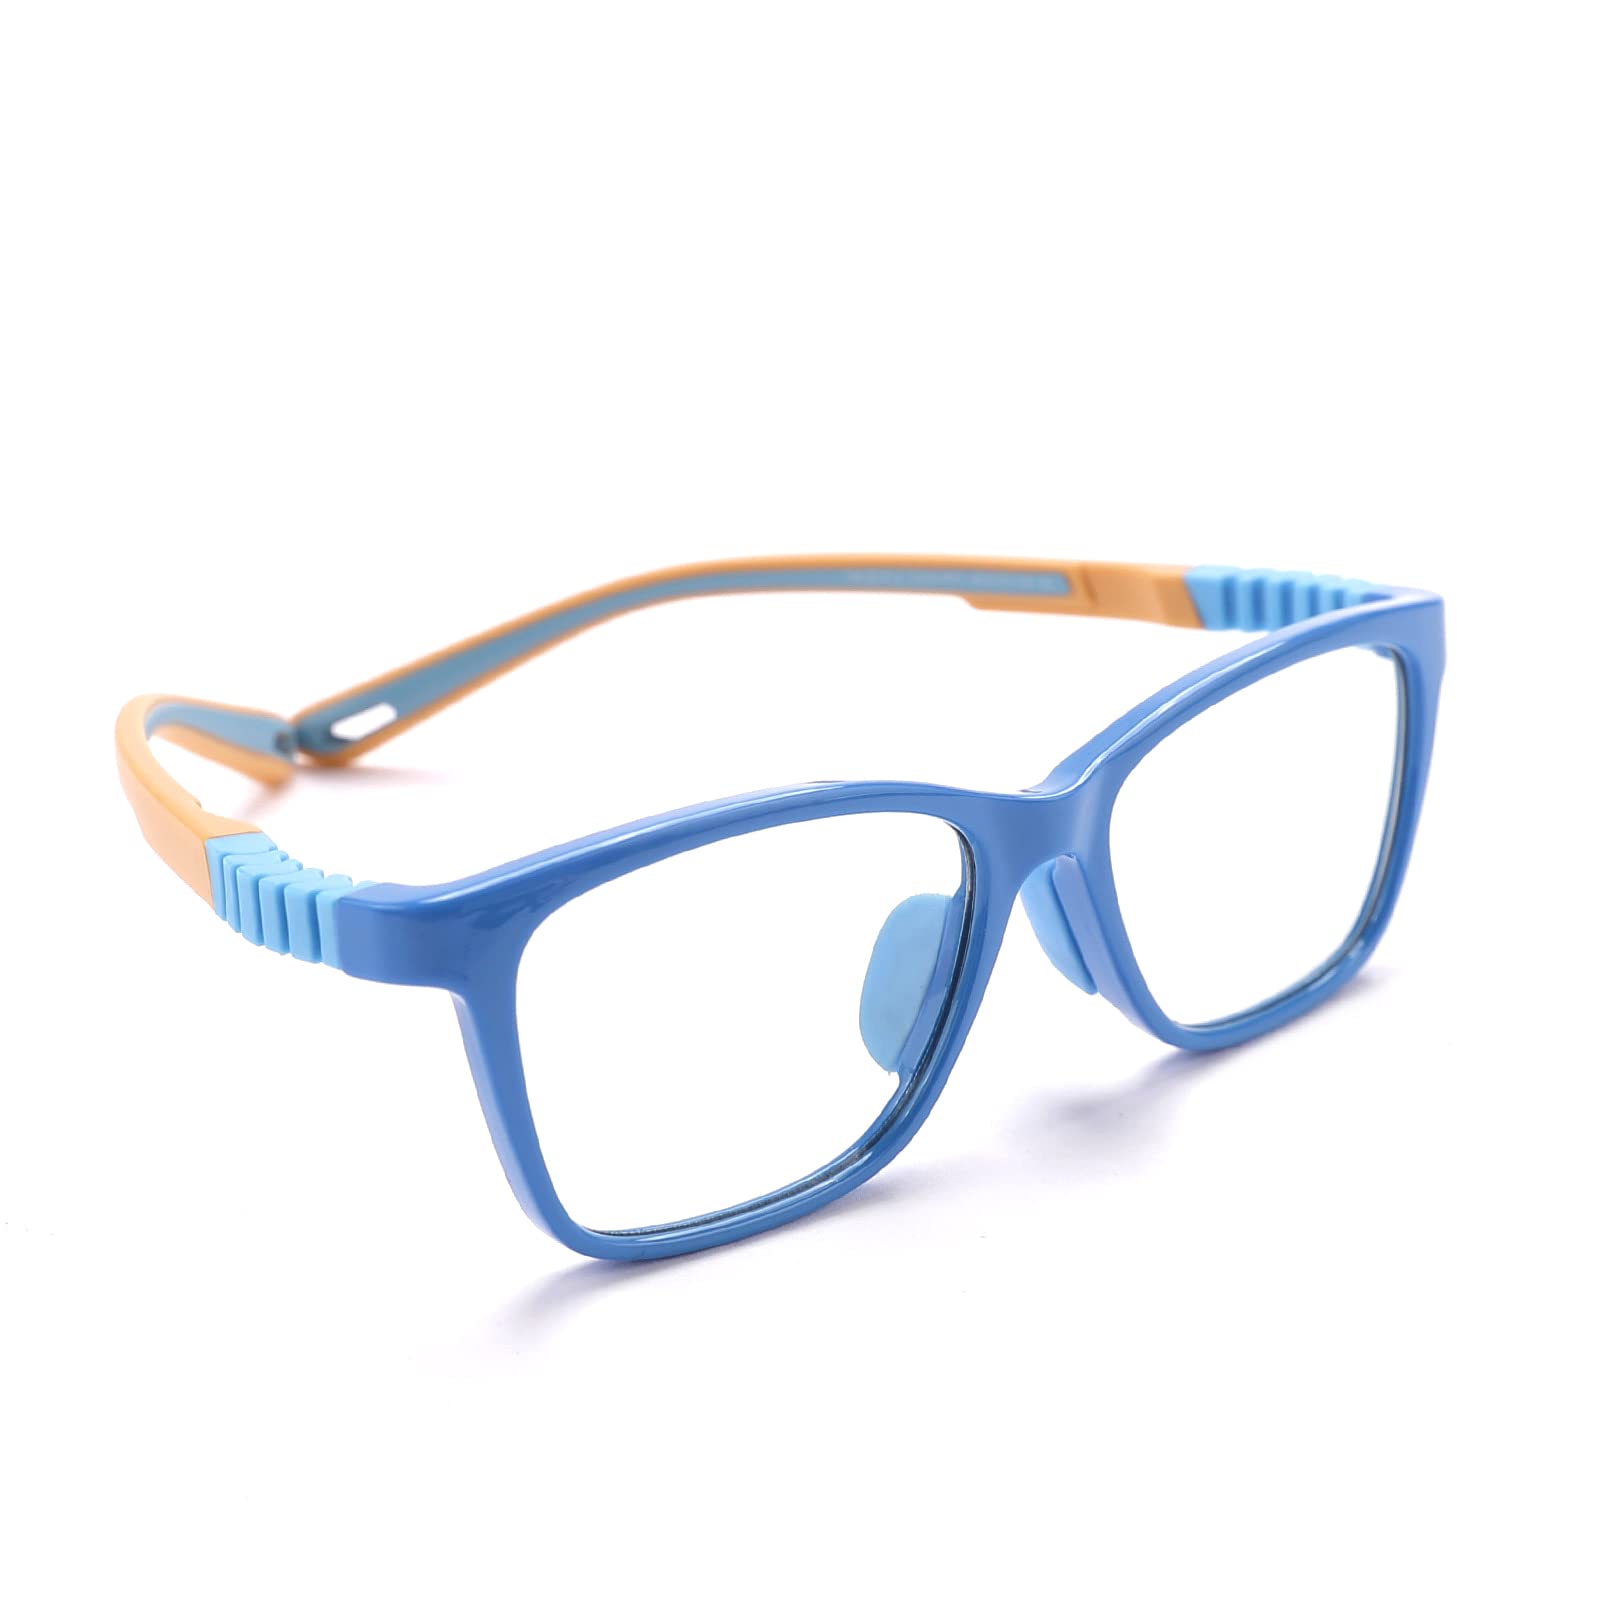 Intellilens Wayfarer Kids Computer Glasses for Eye Protection | Zero Power, Anti Glare & Blue Light Filter Glasses | Blue Cut Lenses for Boys and Girls (Blue) (49-15-130)